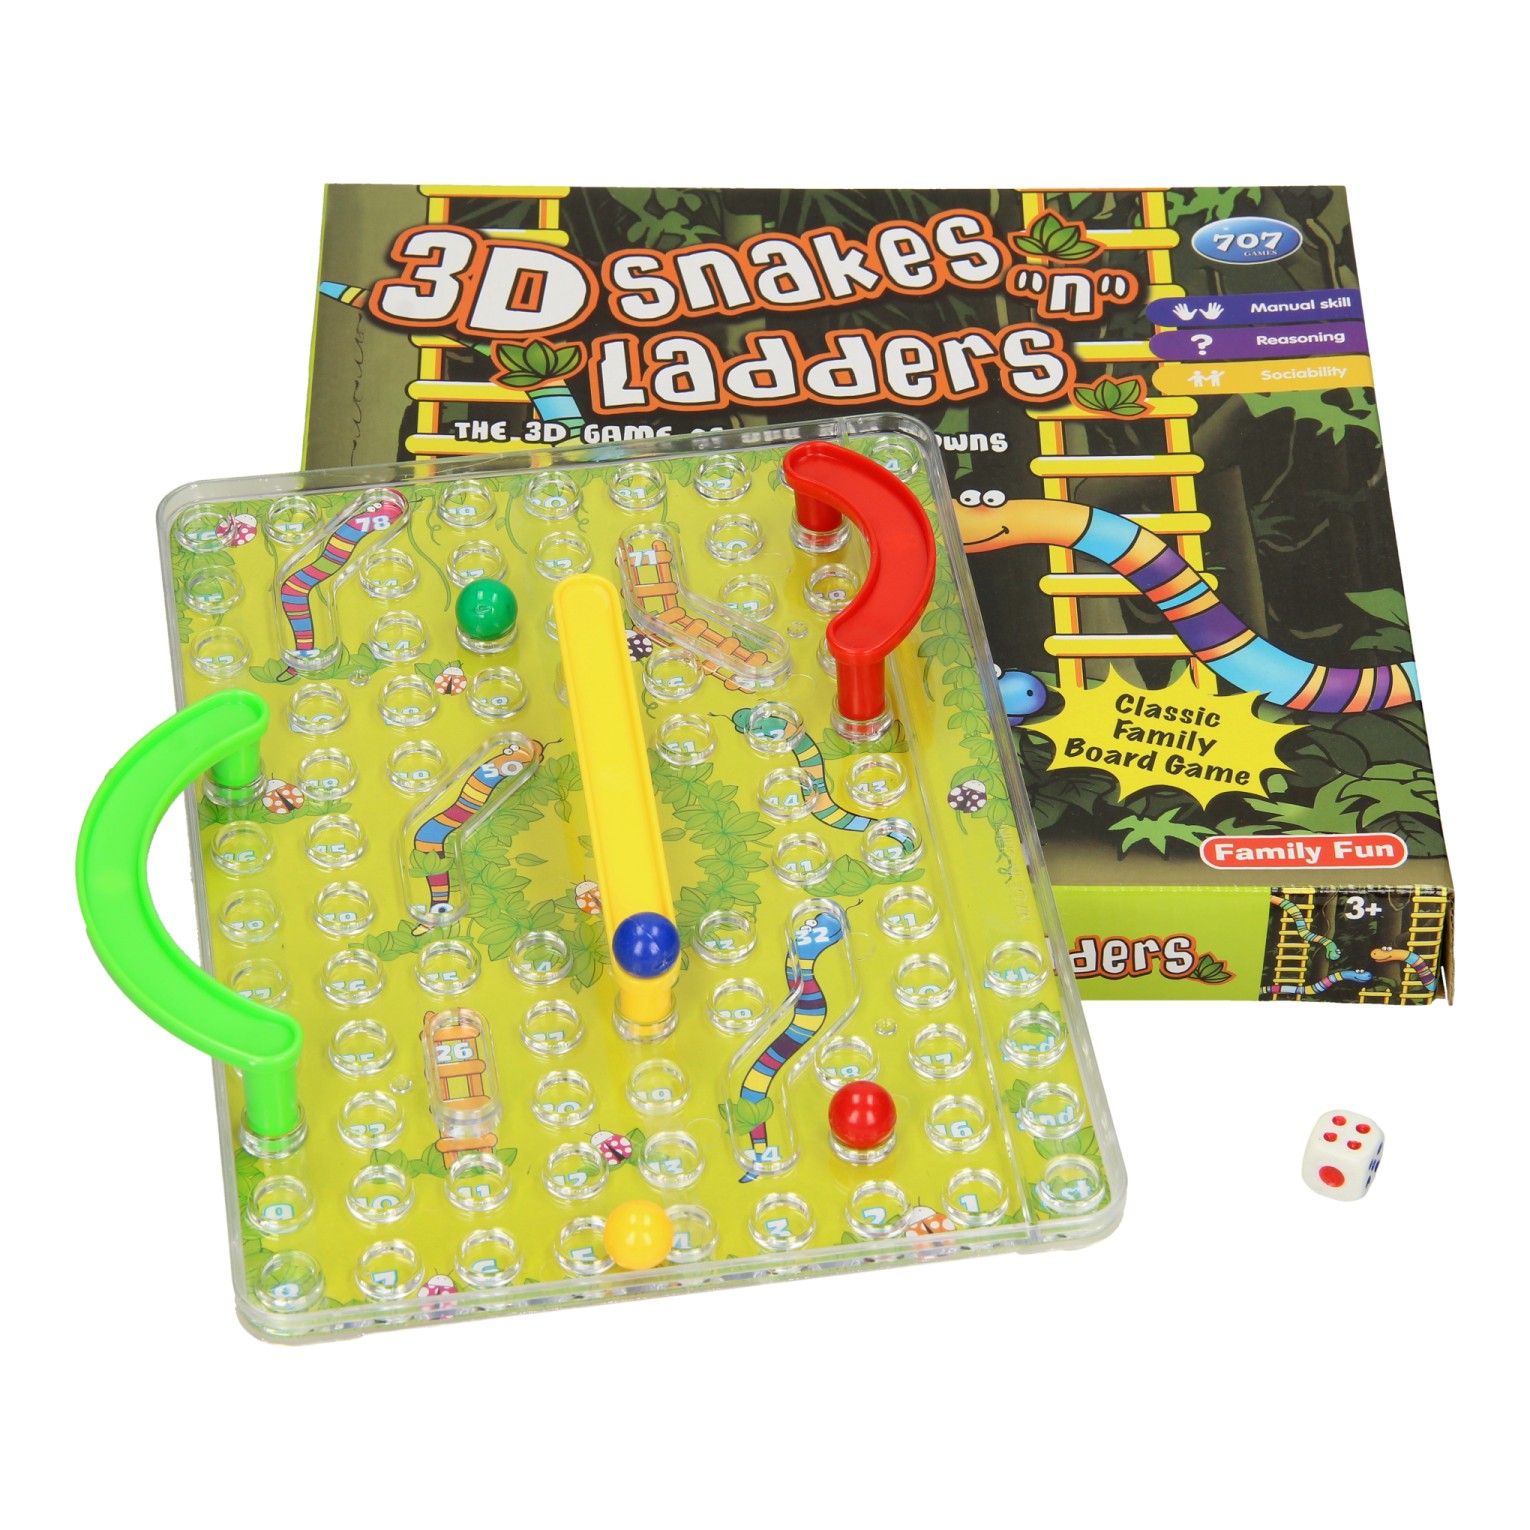 Jeu de serpents et d'échelle 3D